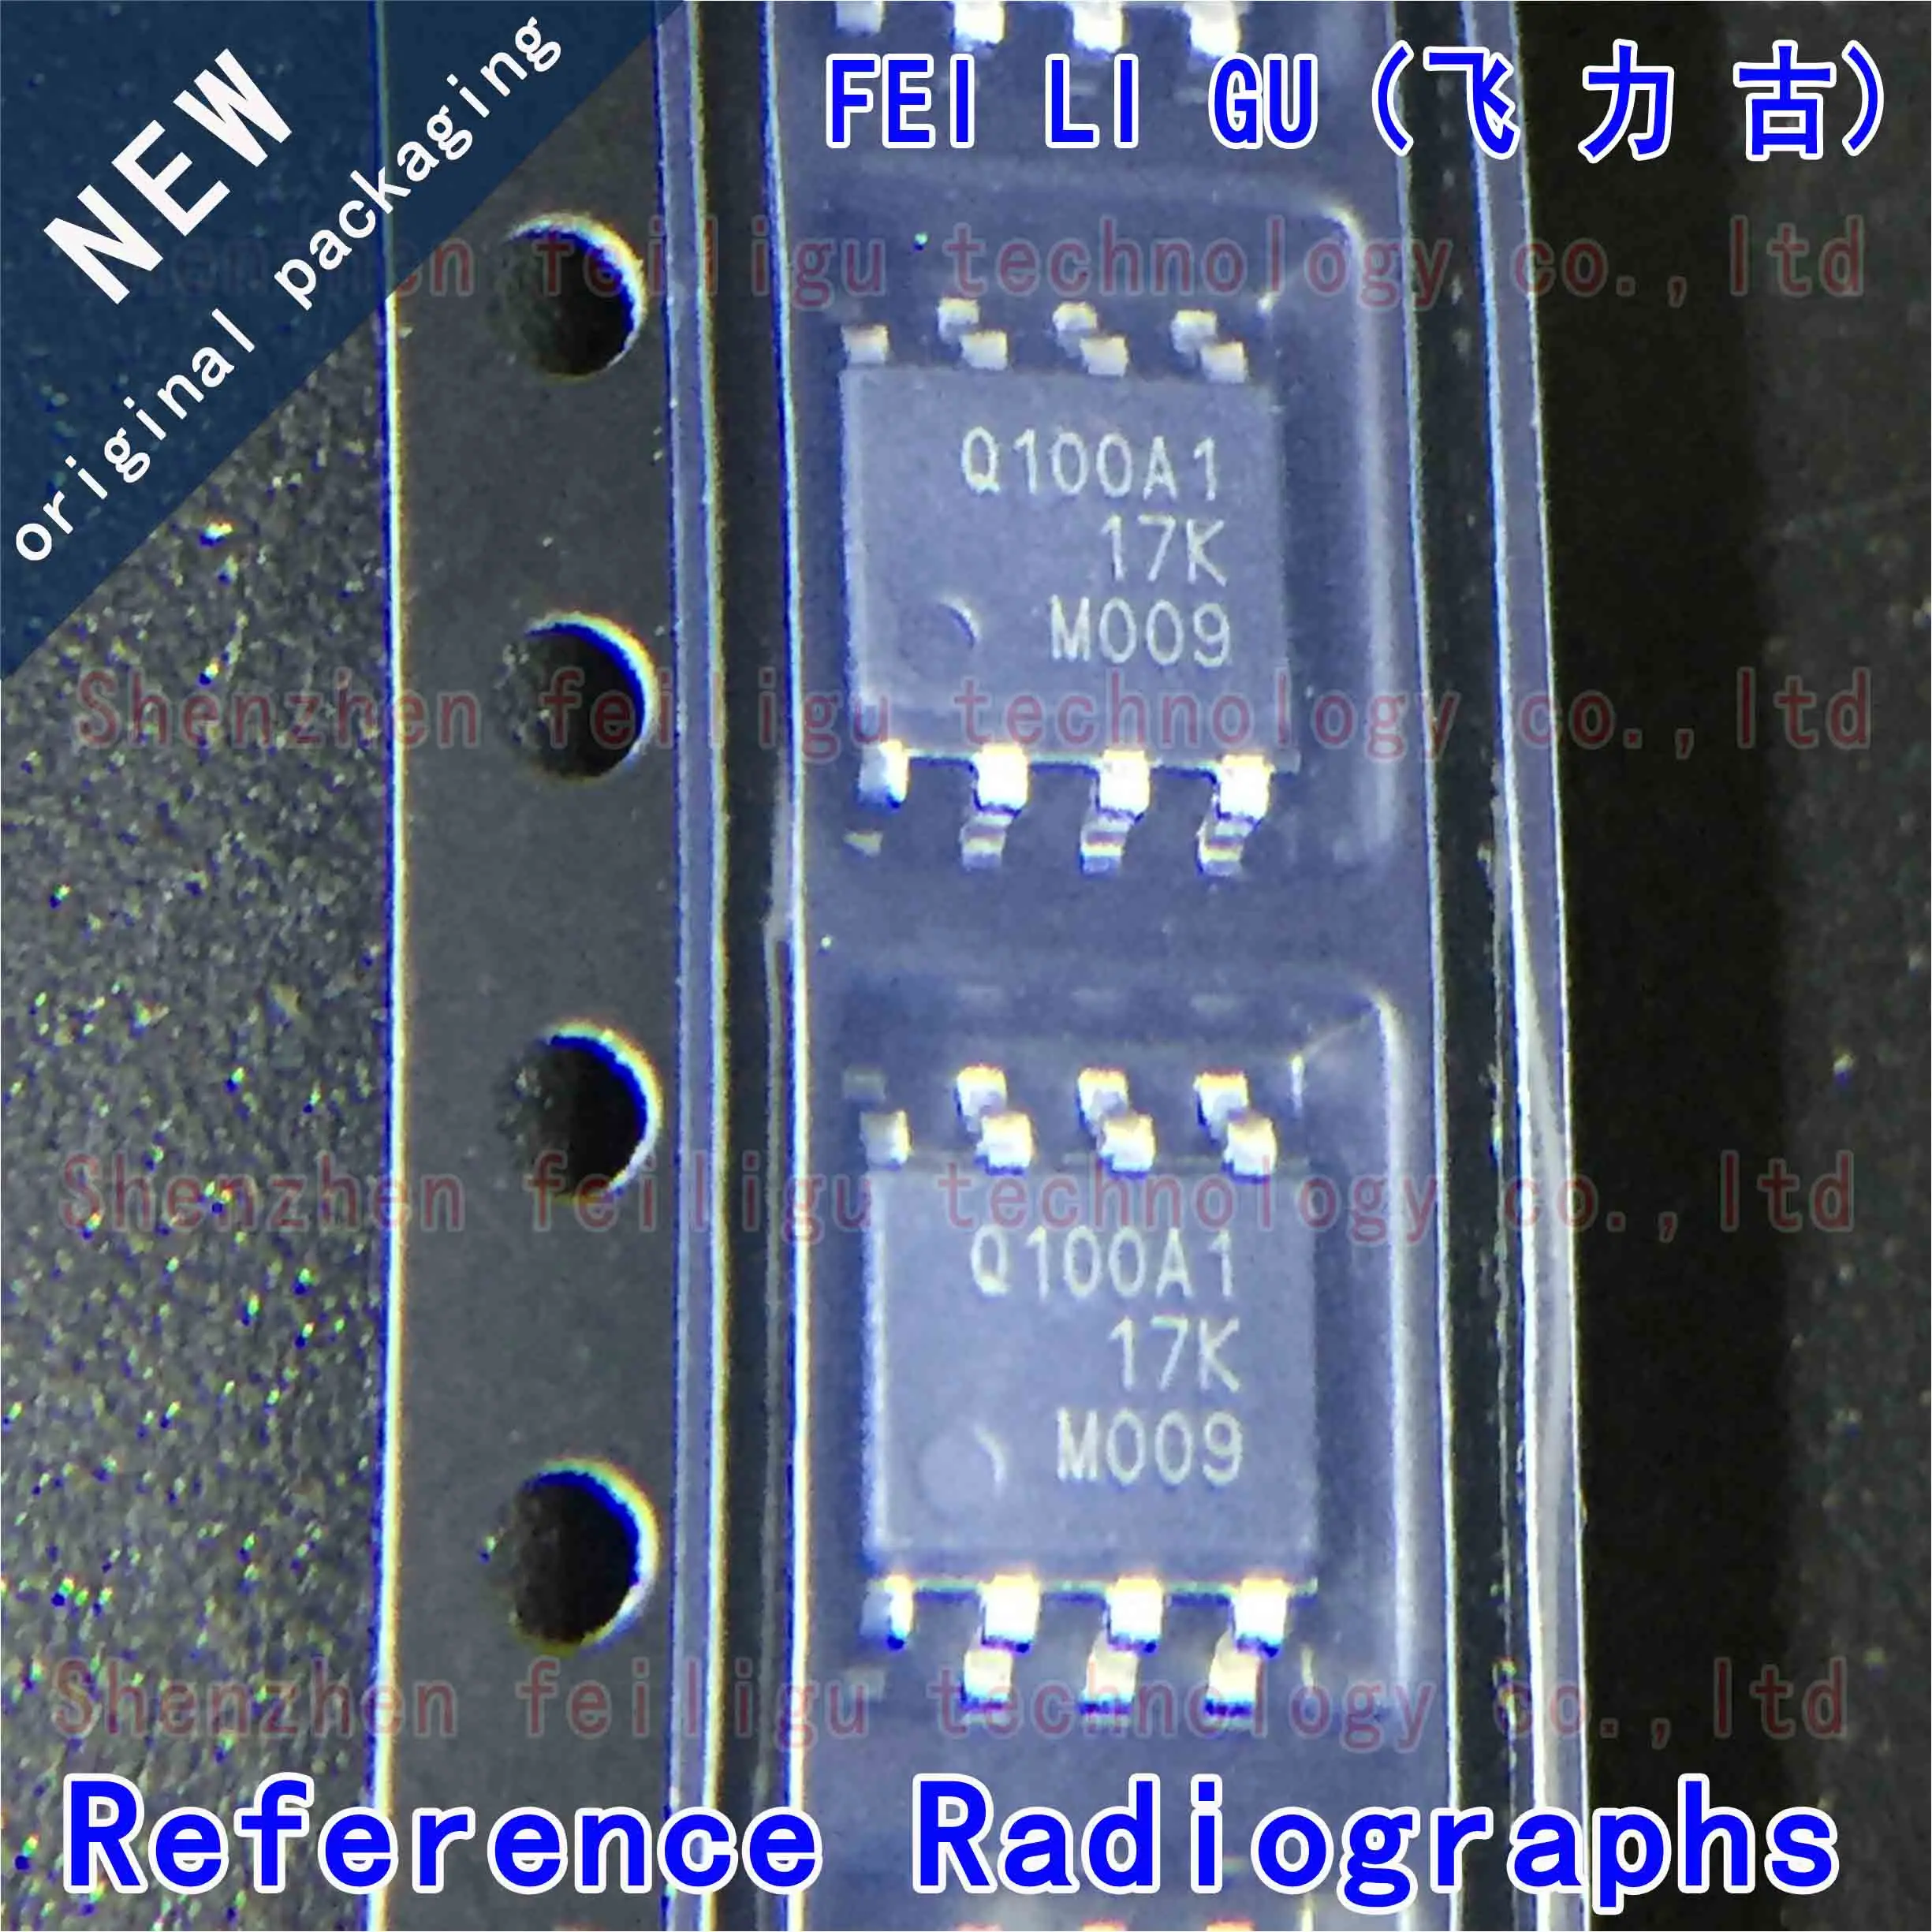 1~30PCS 100% New original TMCS1100A1QDRQ1 TMCS1100A1QDR Screen printing:Q100A1 Package:SOP8 Current sensor chip original ina199a1dckr screen obg 0bg sc70 6 voltage output current shunt monitor chip